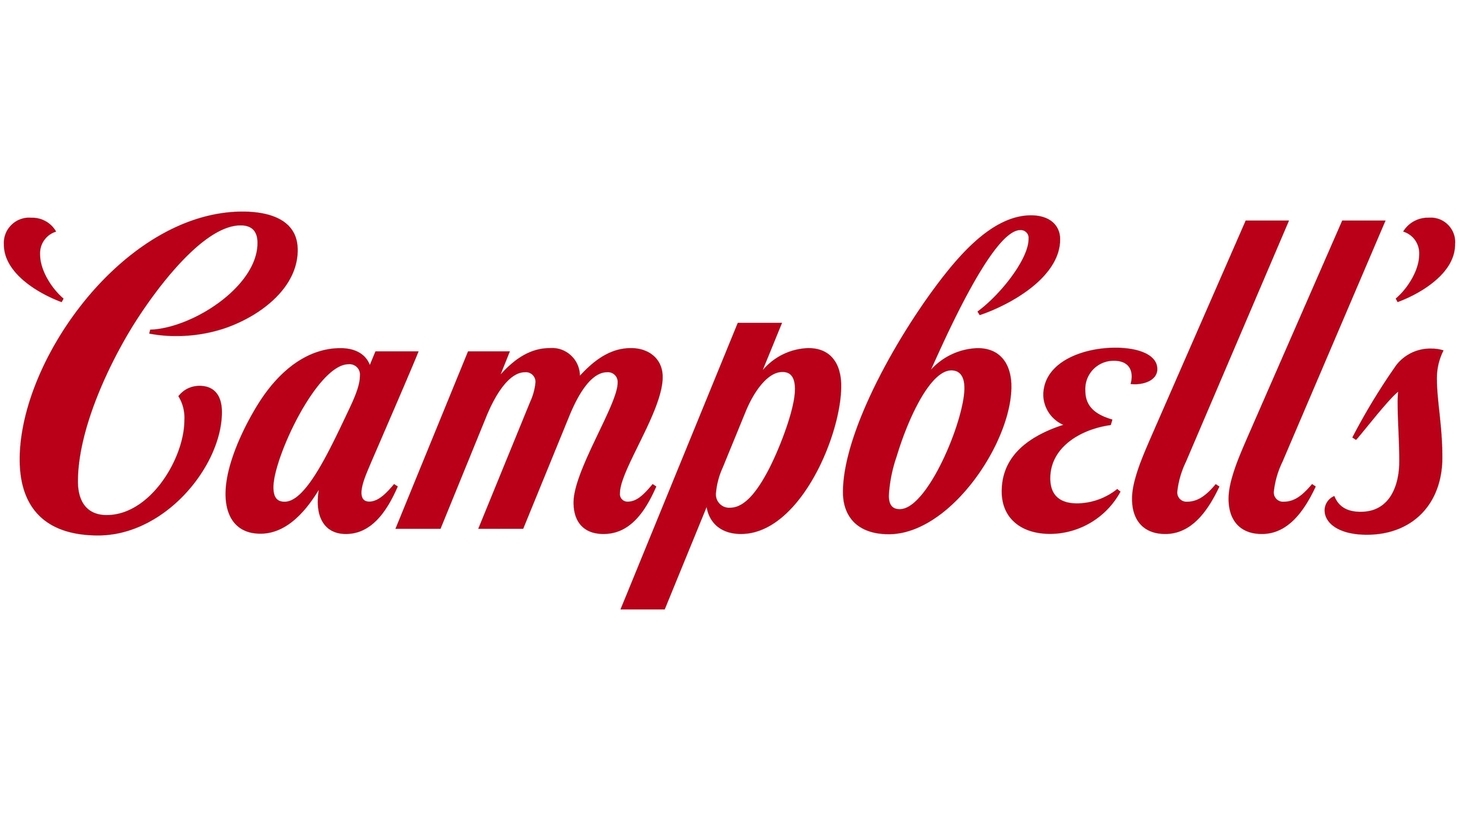 Campbells sign